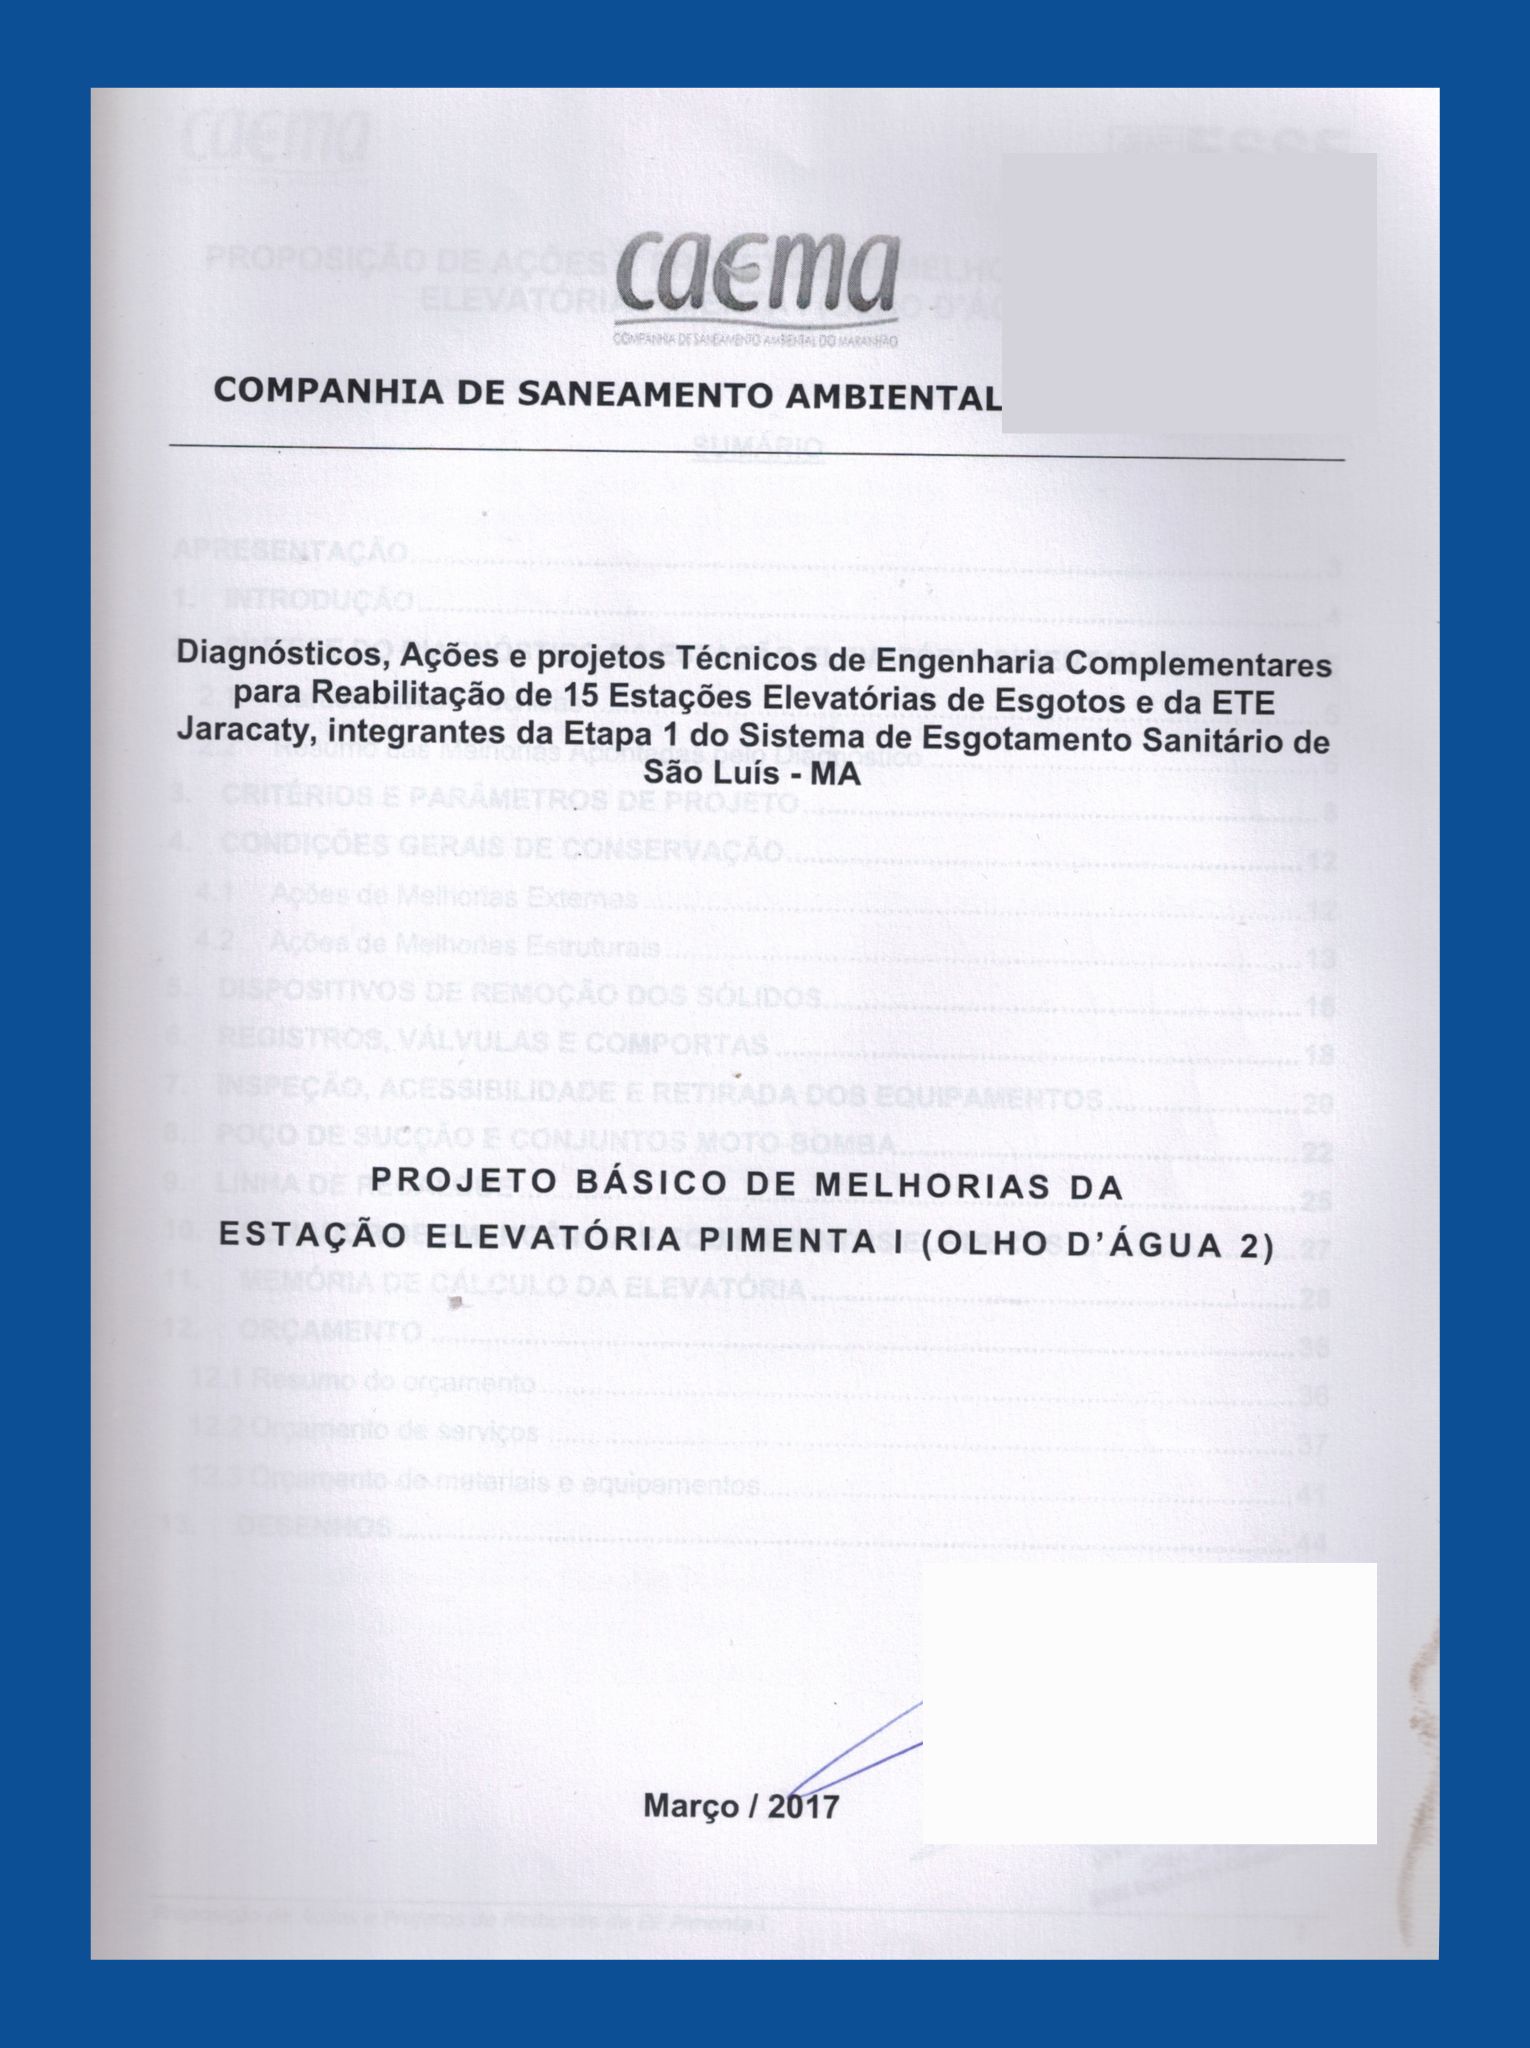 Imagem da capa do Projeto Técnico com informações sobre título e autoria